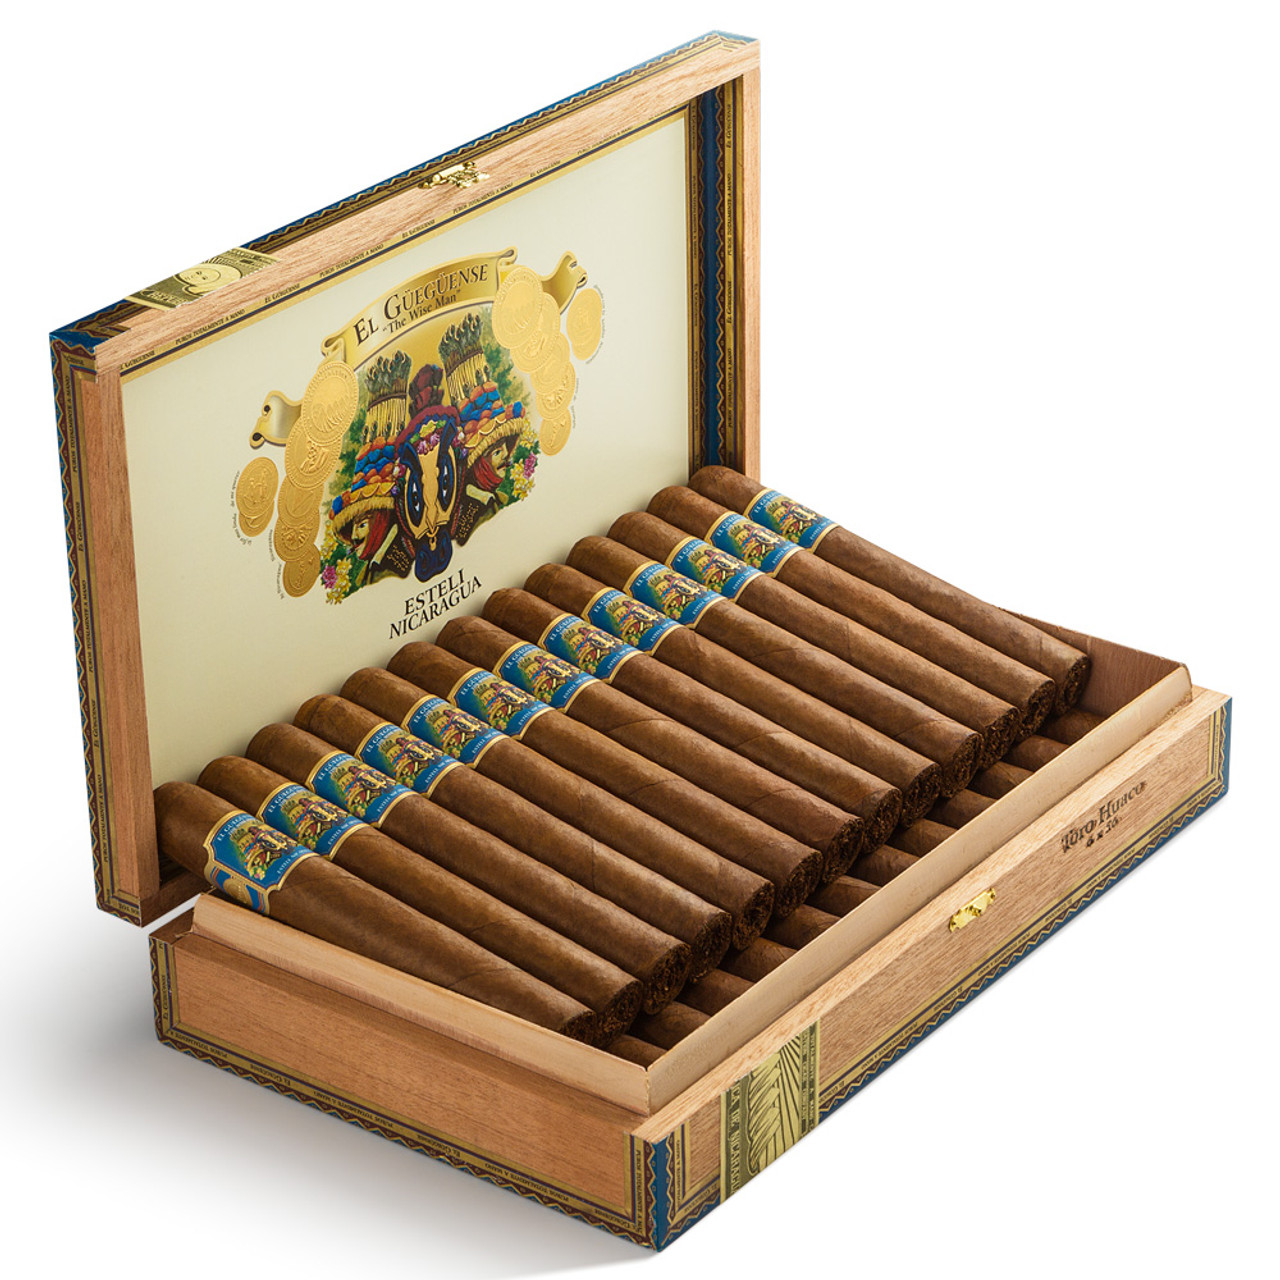 Foundation El Gueguense Corona Gorda Cigars - 5.62 x 46 (Box of 25)